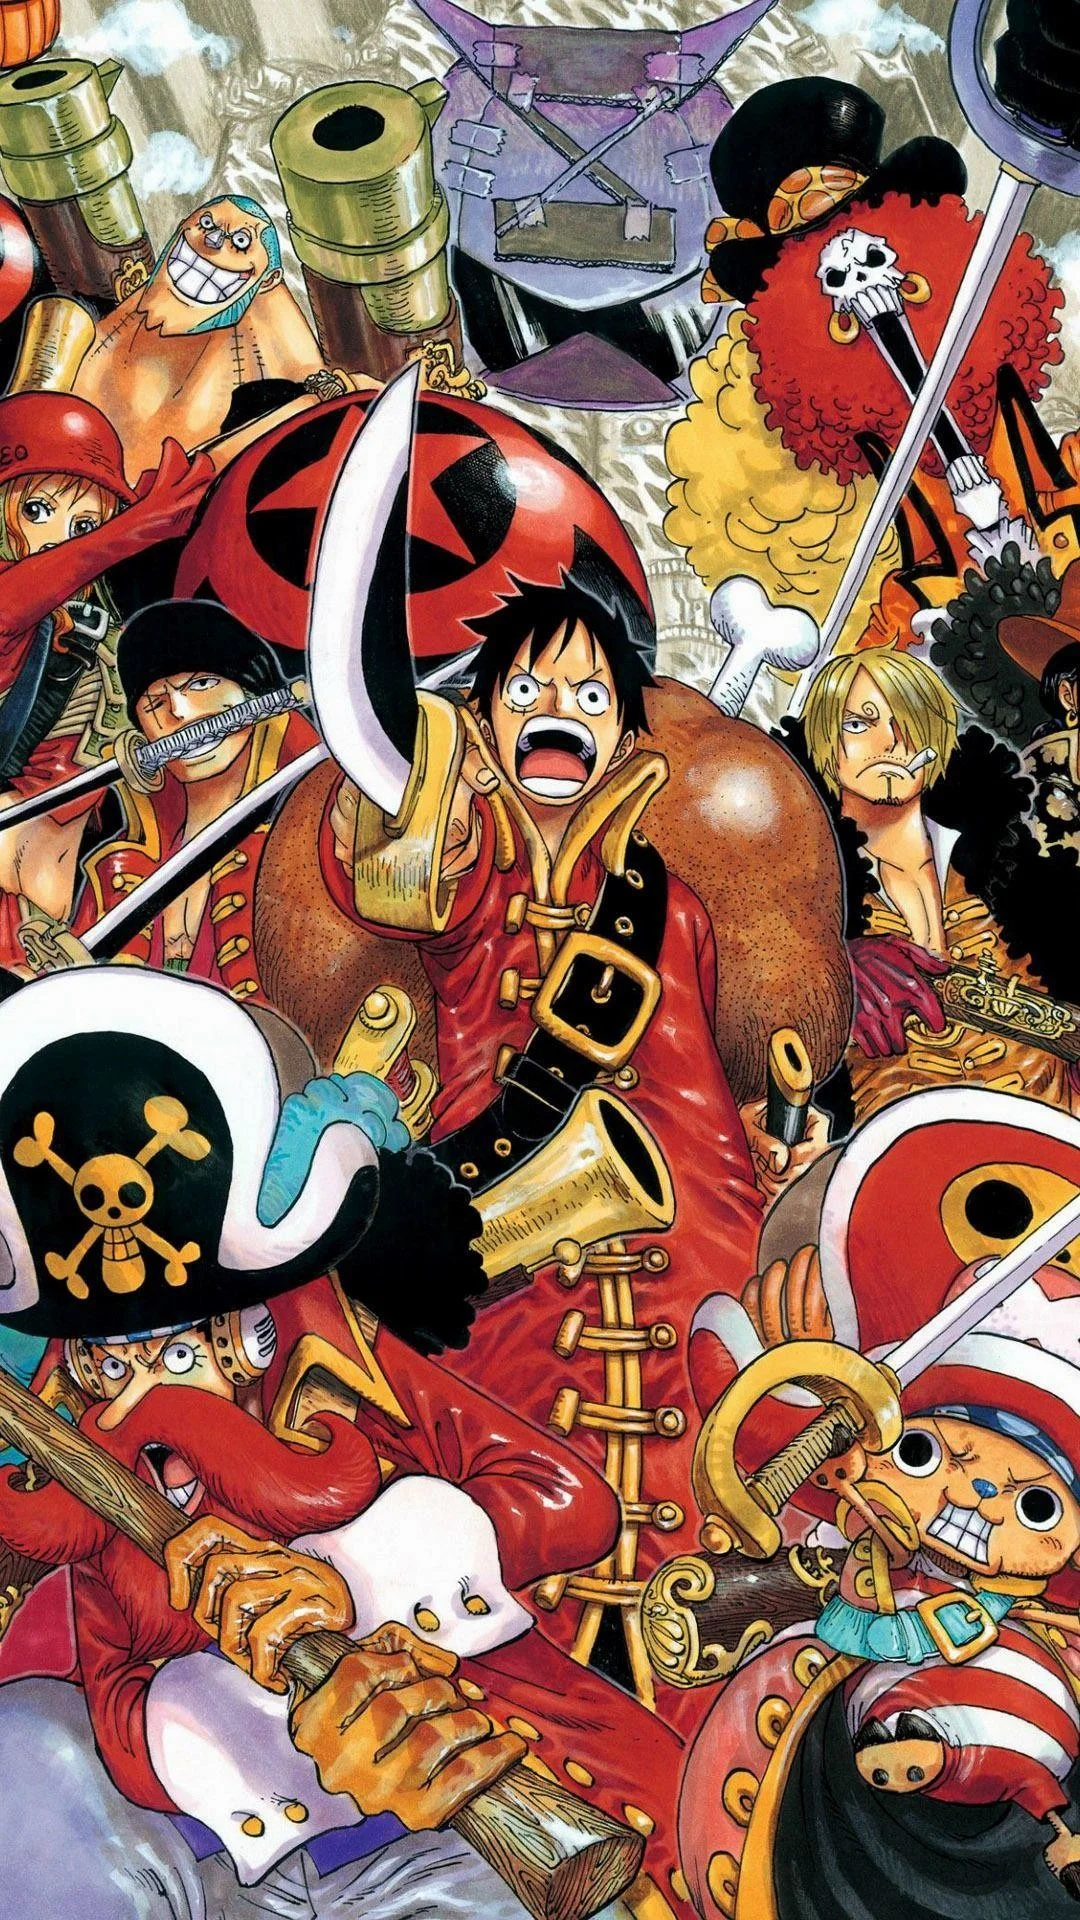 Hãy tải ngay những hình nền One Piece cho điện thoại iPhone của bạn để trải nghiệm cảm giác sống động và kỳ diệu của thế giới One Piece. Những bức hình nền đầy màu sắc và tinh tế sẽ giúp bạn trang trí màn hình điện thoại của mình một cách thật độc đáo và ấn tượng.